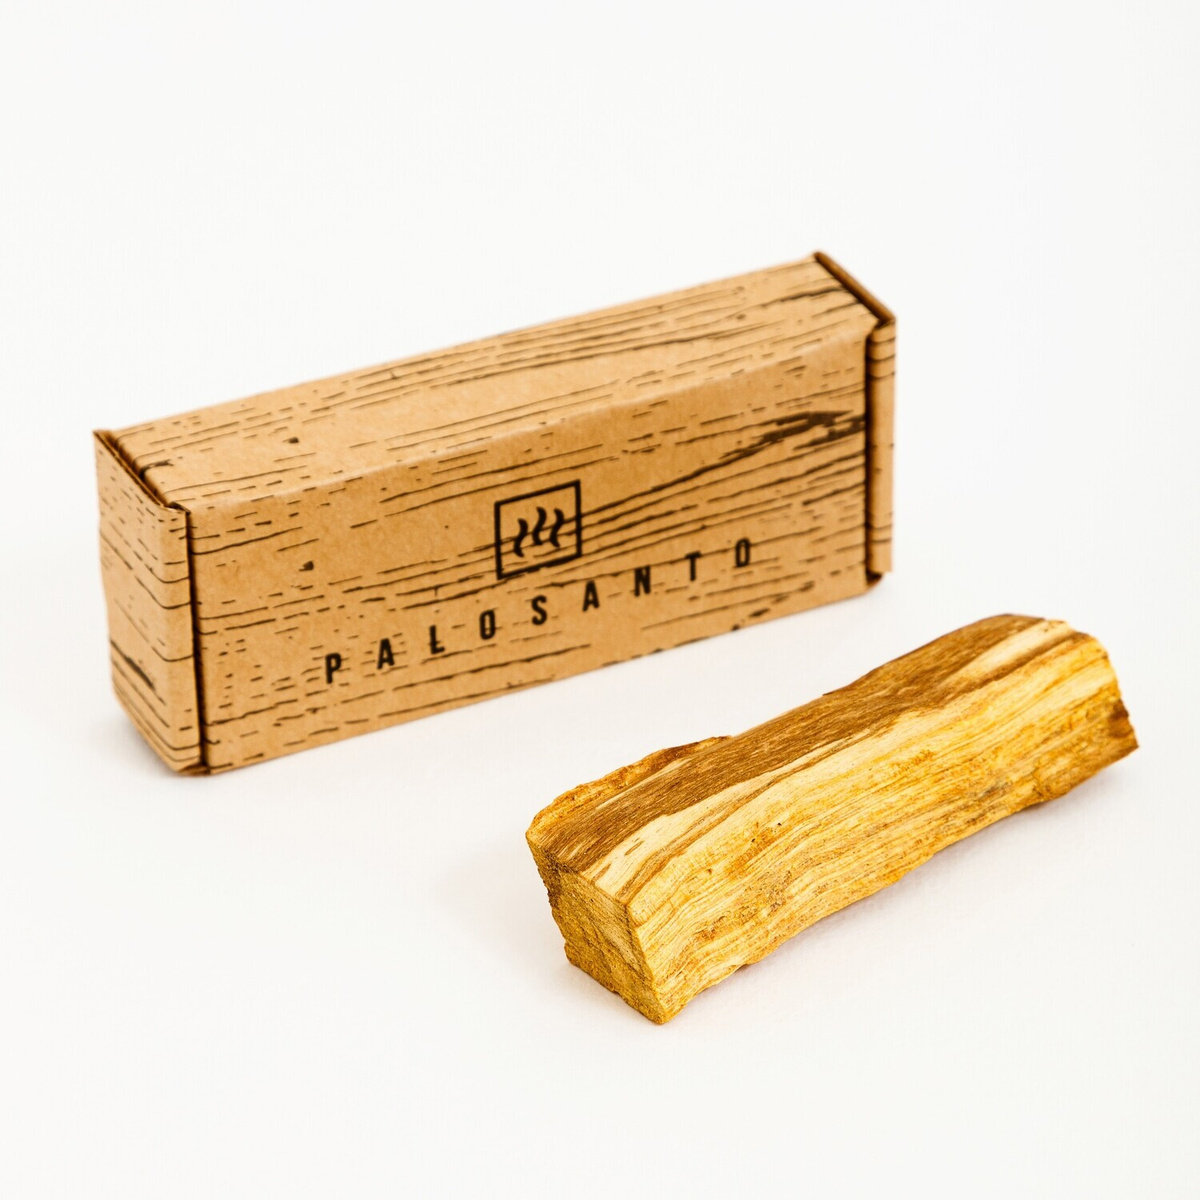 Гигантская палочка дерева пало санто , вес от 22 грамм/ 1 палочка palo santo в картонной коробочке, натуральное #1